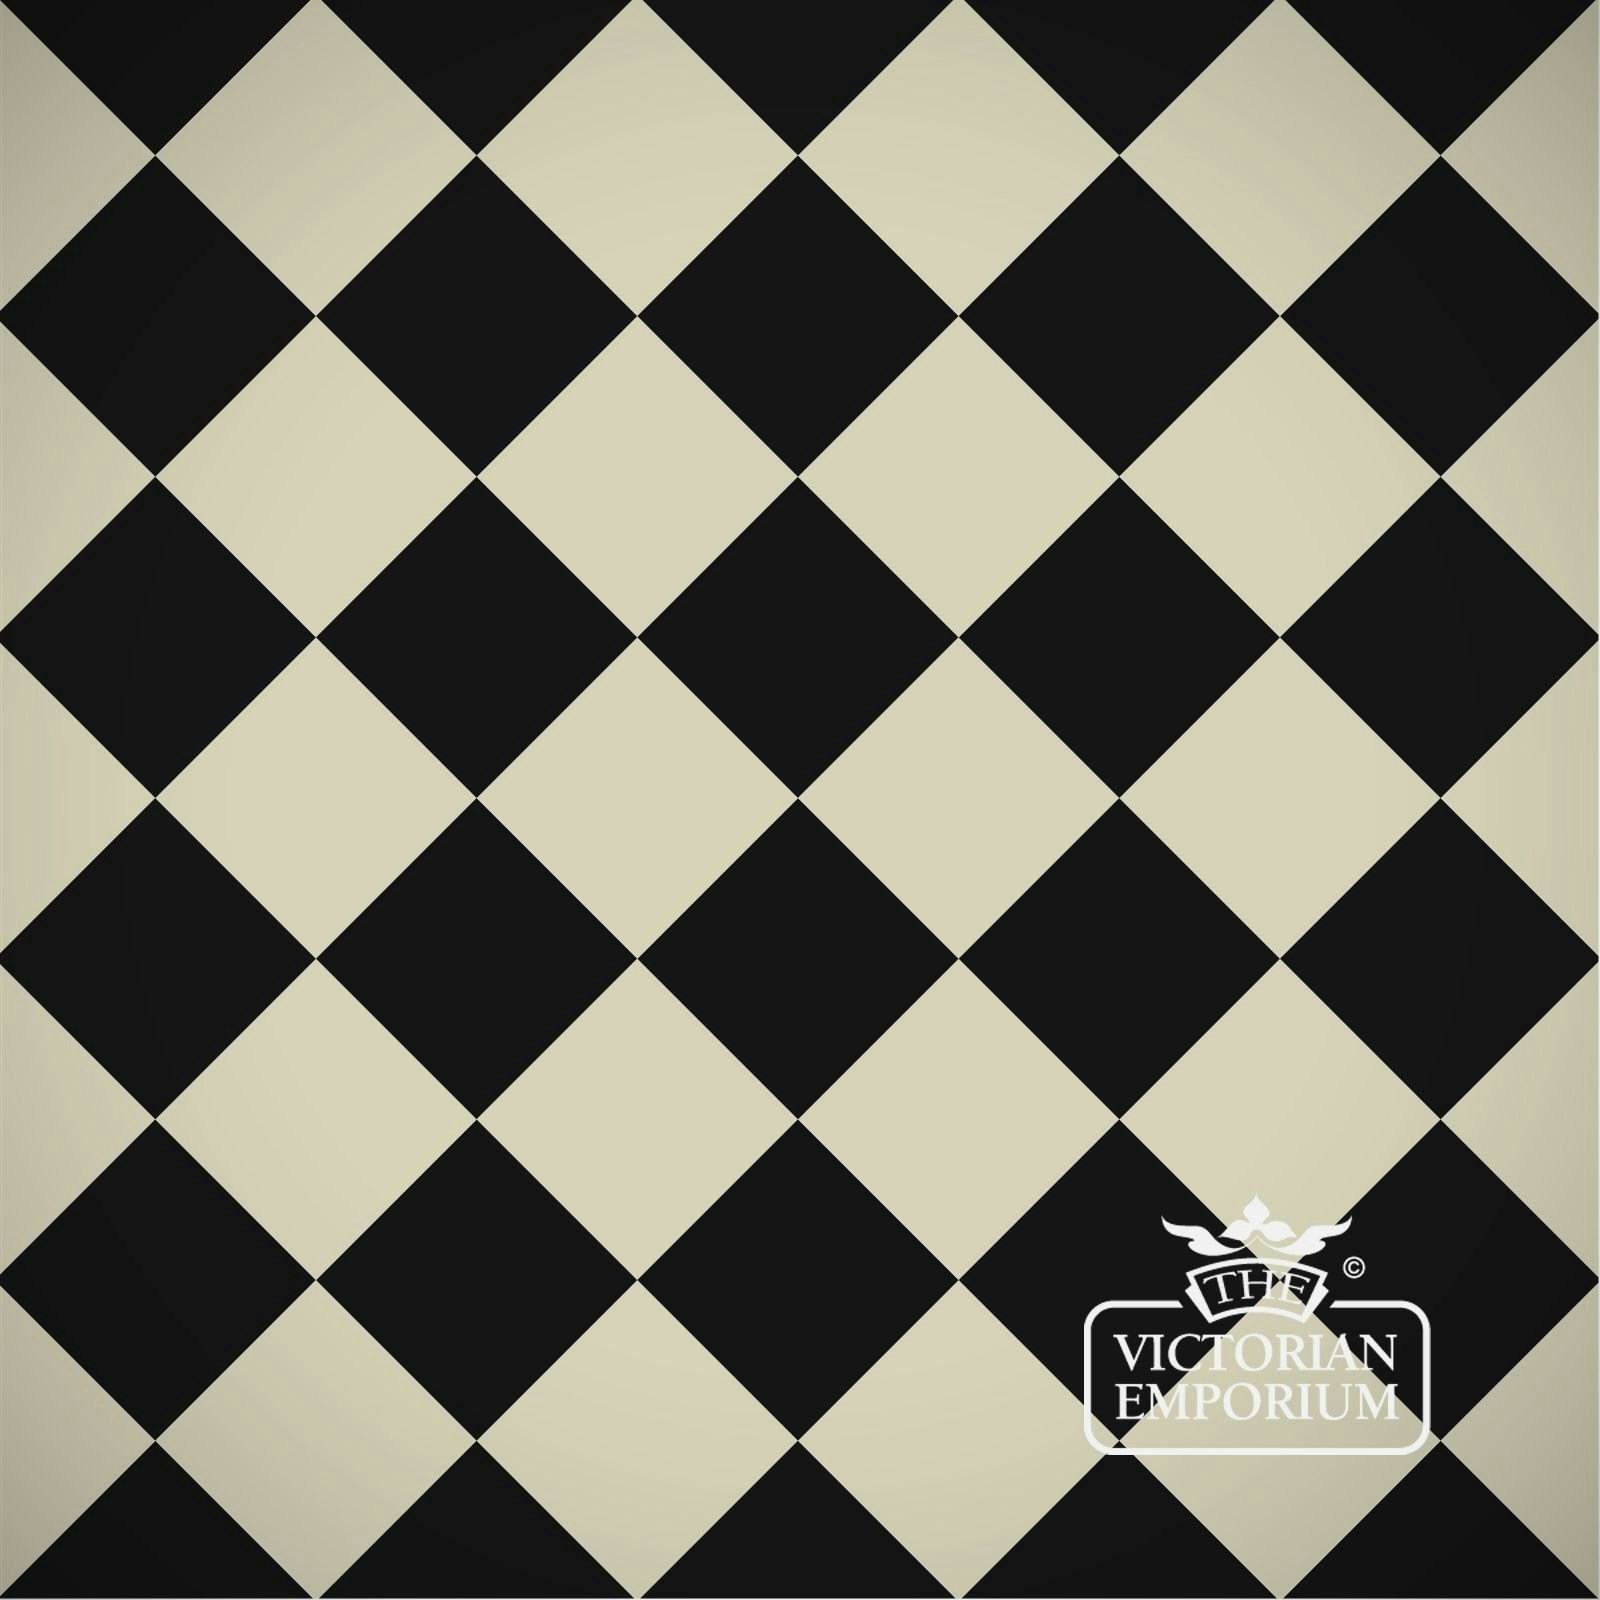 The Victorian Emporium Victorian Path Tiles - Black And White 10cm X 10cm Squares, £70.80 per sqm